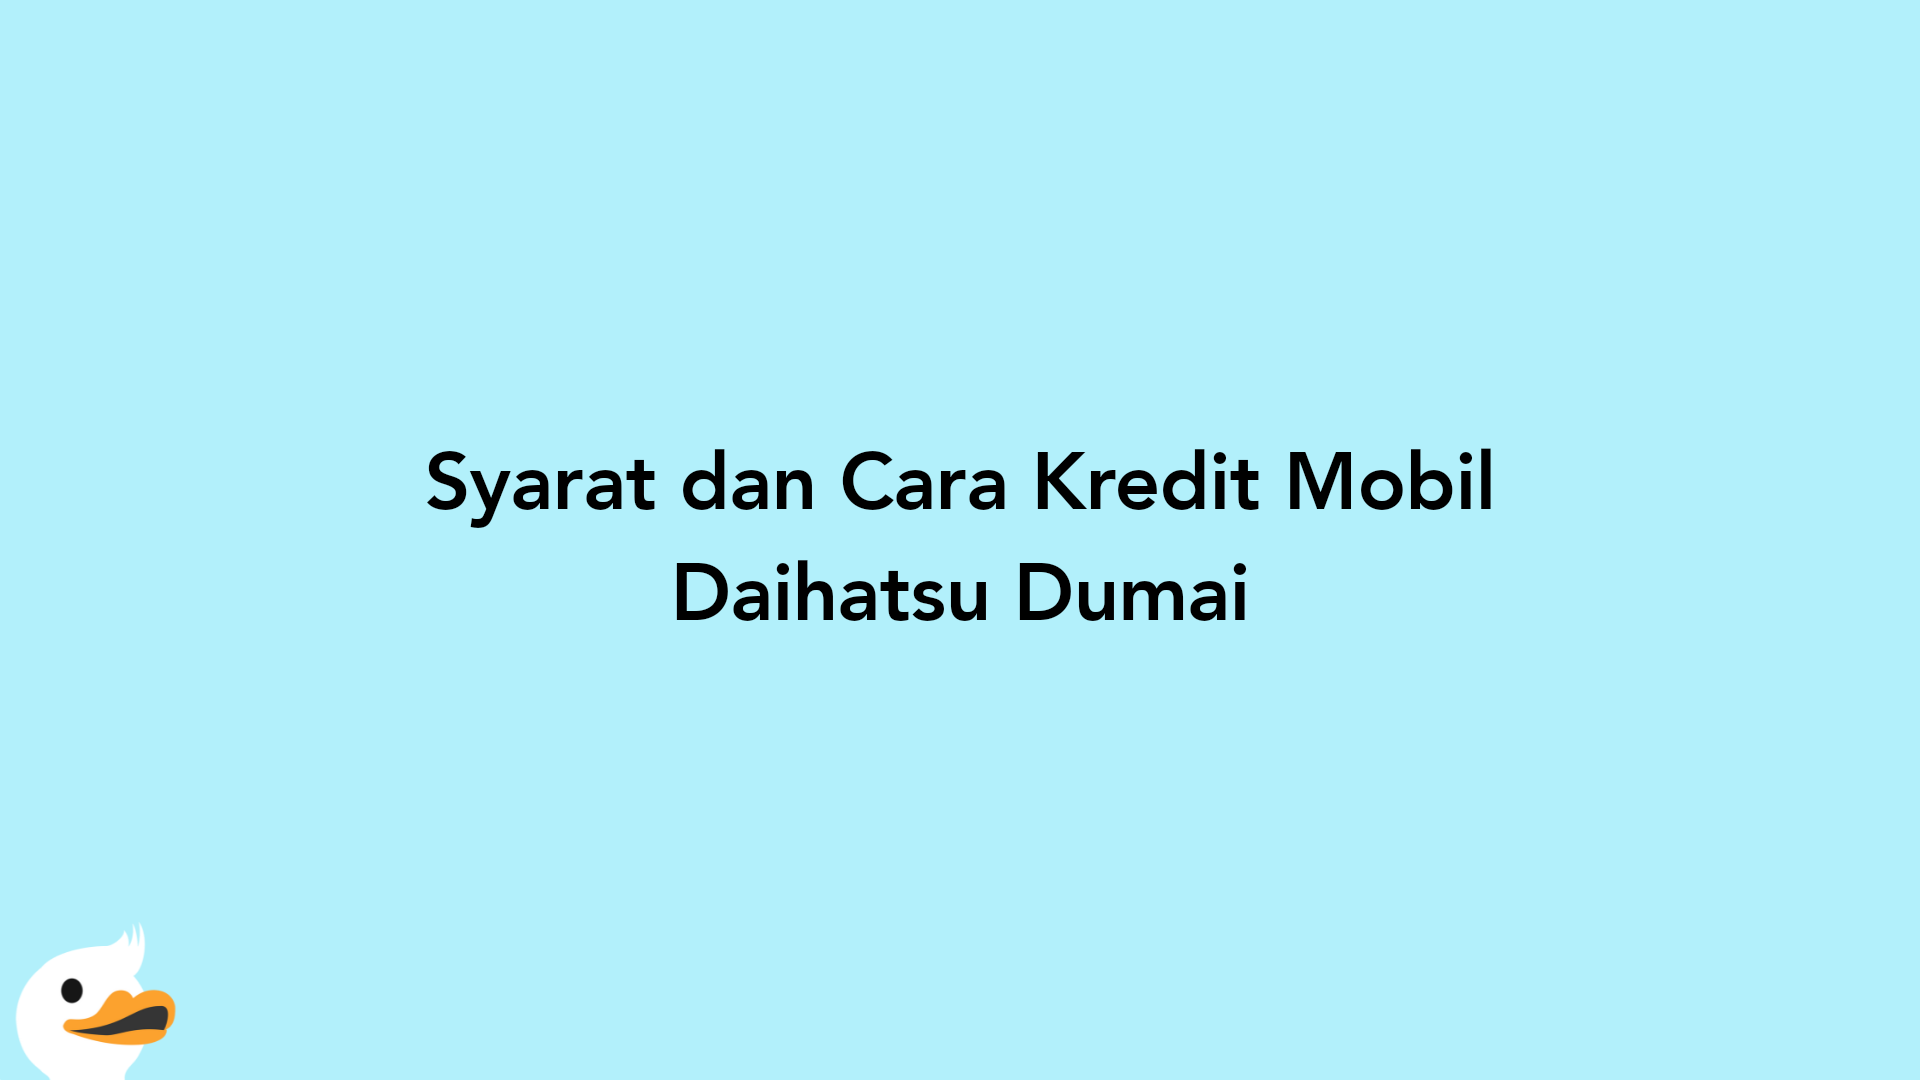 Syarat dan Cara Kredit Mobil Daihatsu Dumai